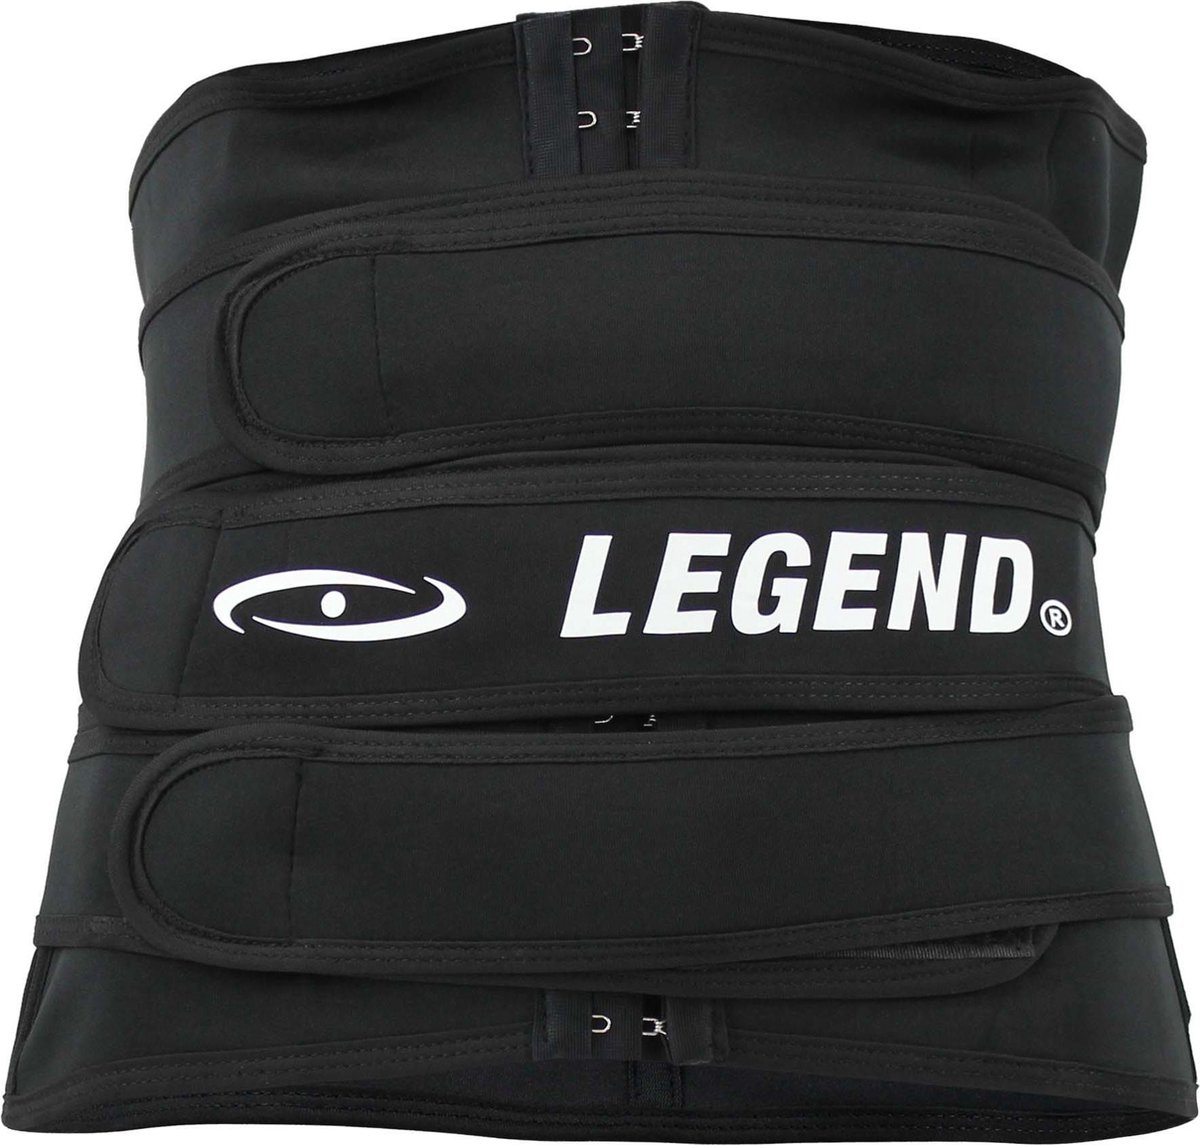 Legend Premium Waist trainer 2XL